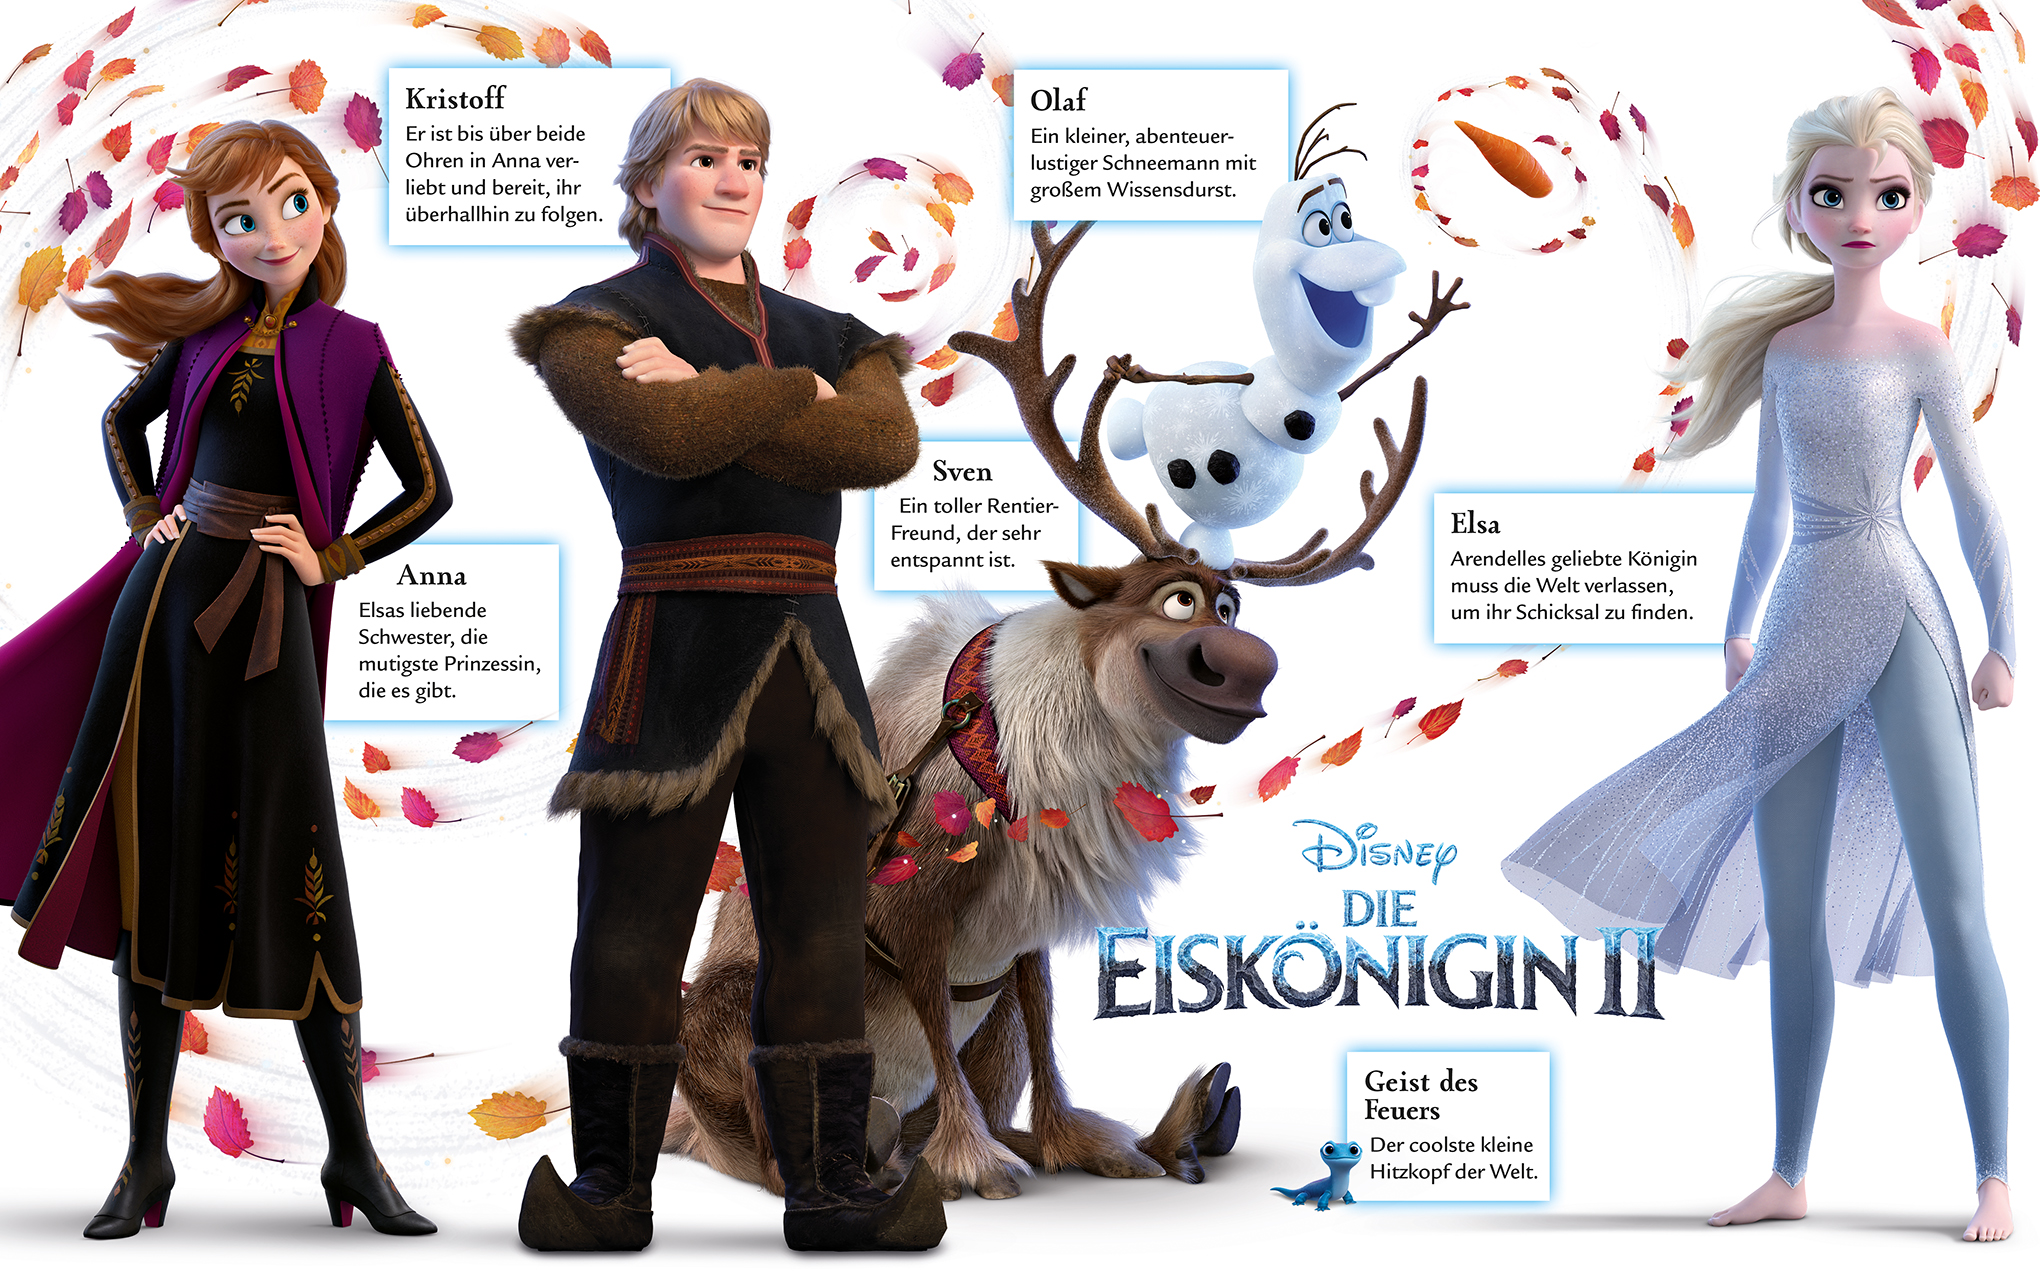 Disney Die Eiskönigin 2. Das offizielle Buch zum Film